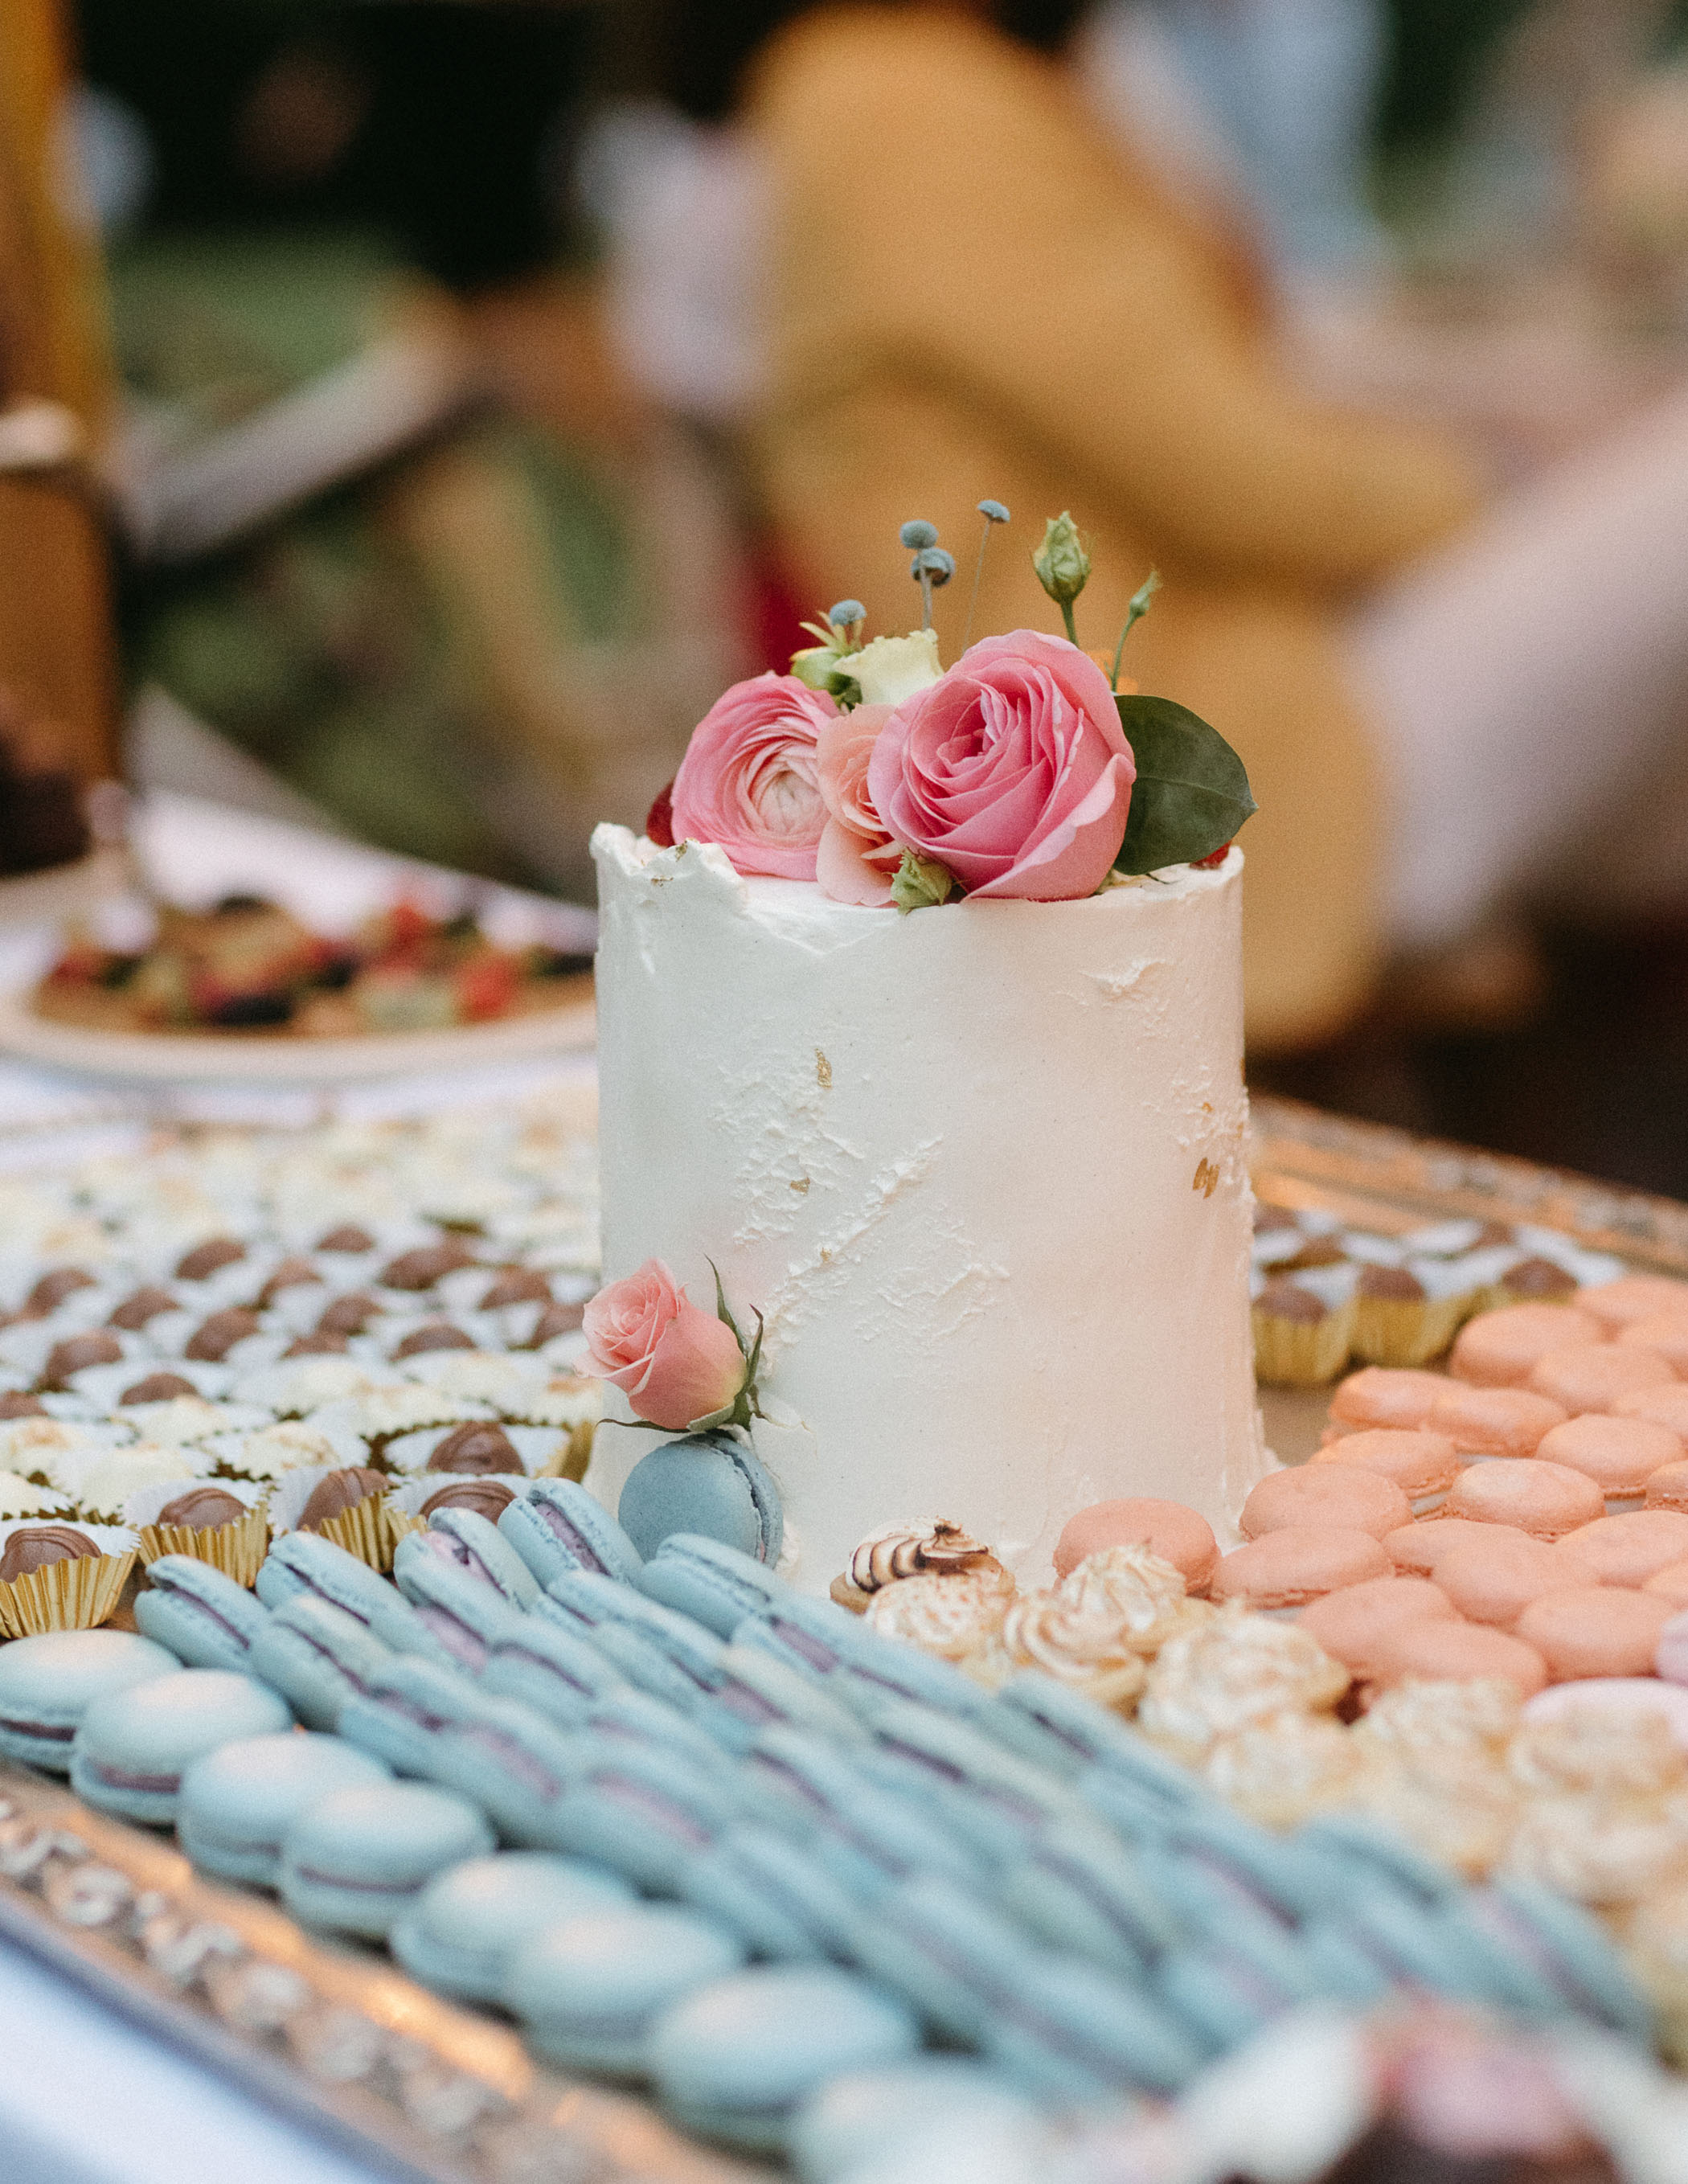 Wedding cake and macaron table